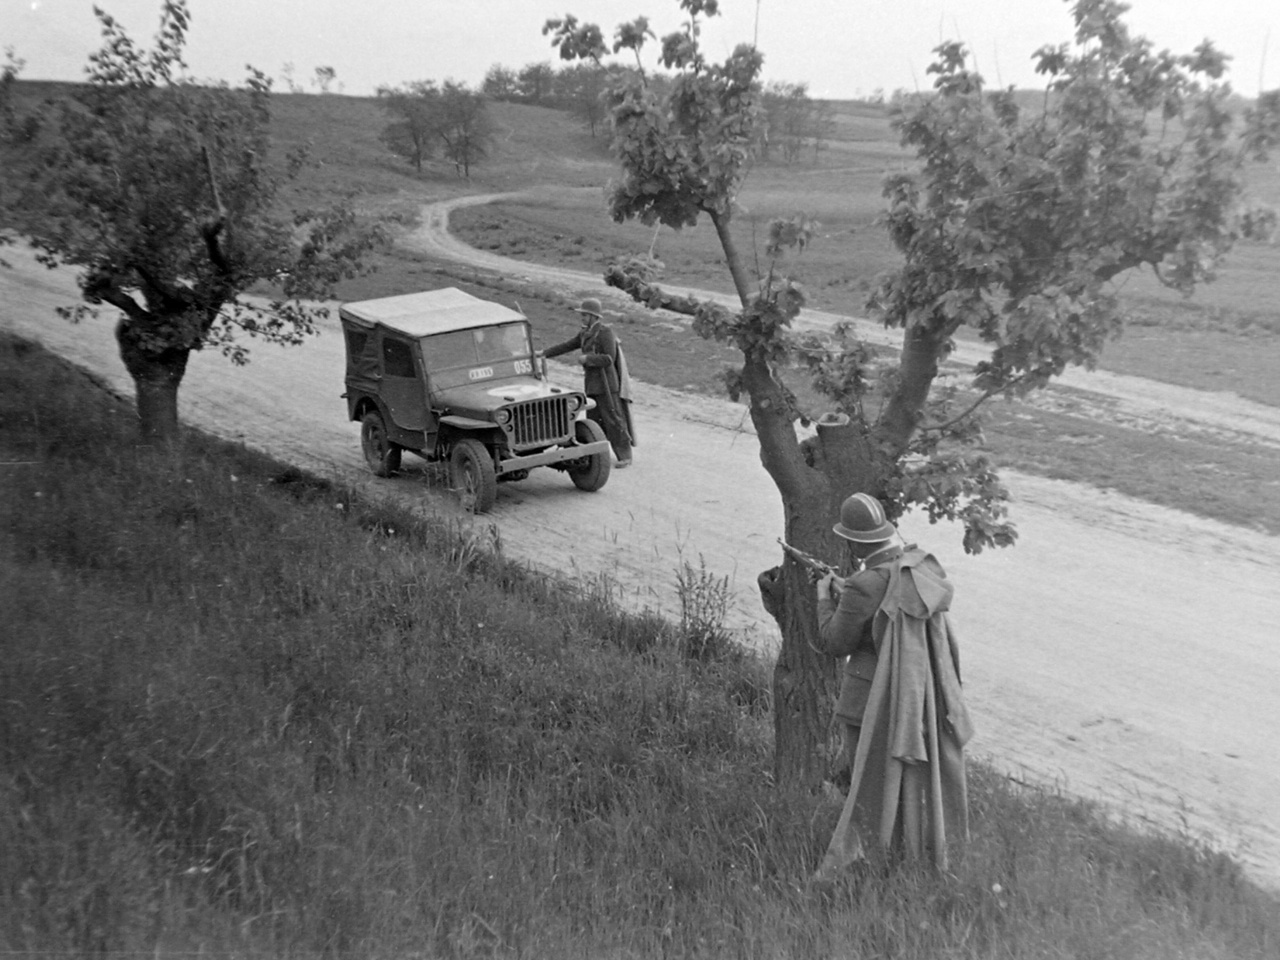 Igazoltatás a határon háttérbiztosítással (1949). A kommunista hatalomátvétel után készült fotó valószínűleg beállított volt: az autó katonai jármű, benne a sofőr uniformisban ül, és valódi helyzetben egy épeszű járőr sem egy ilyen fa mögött keresne magának fedezéket,  ahol ennyire tisztán kivehető lenne egy veszélyesnek ítélt autó számára.